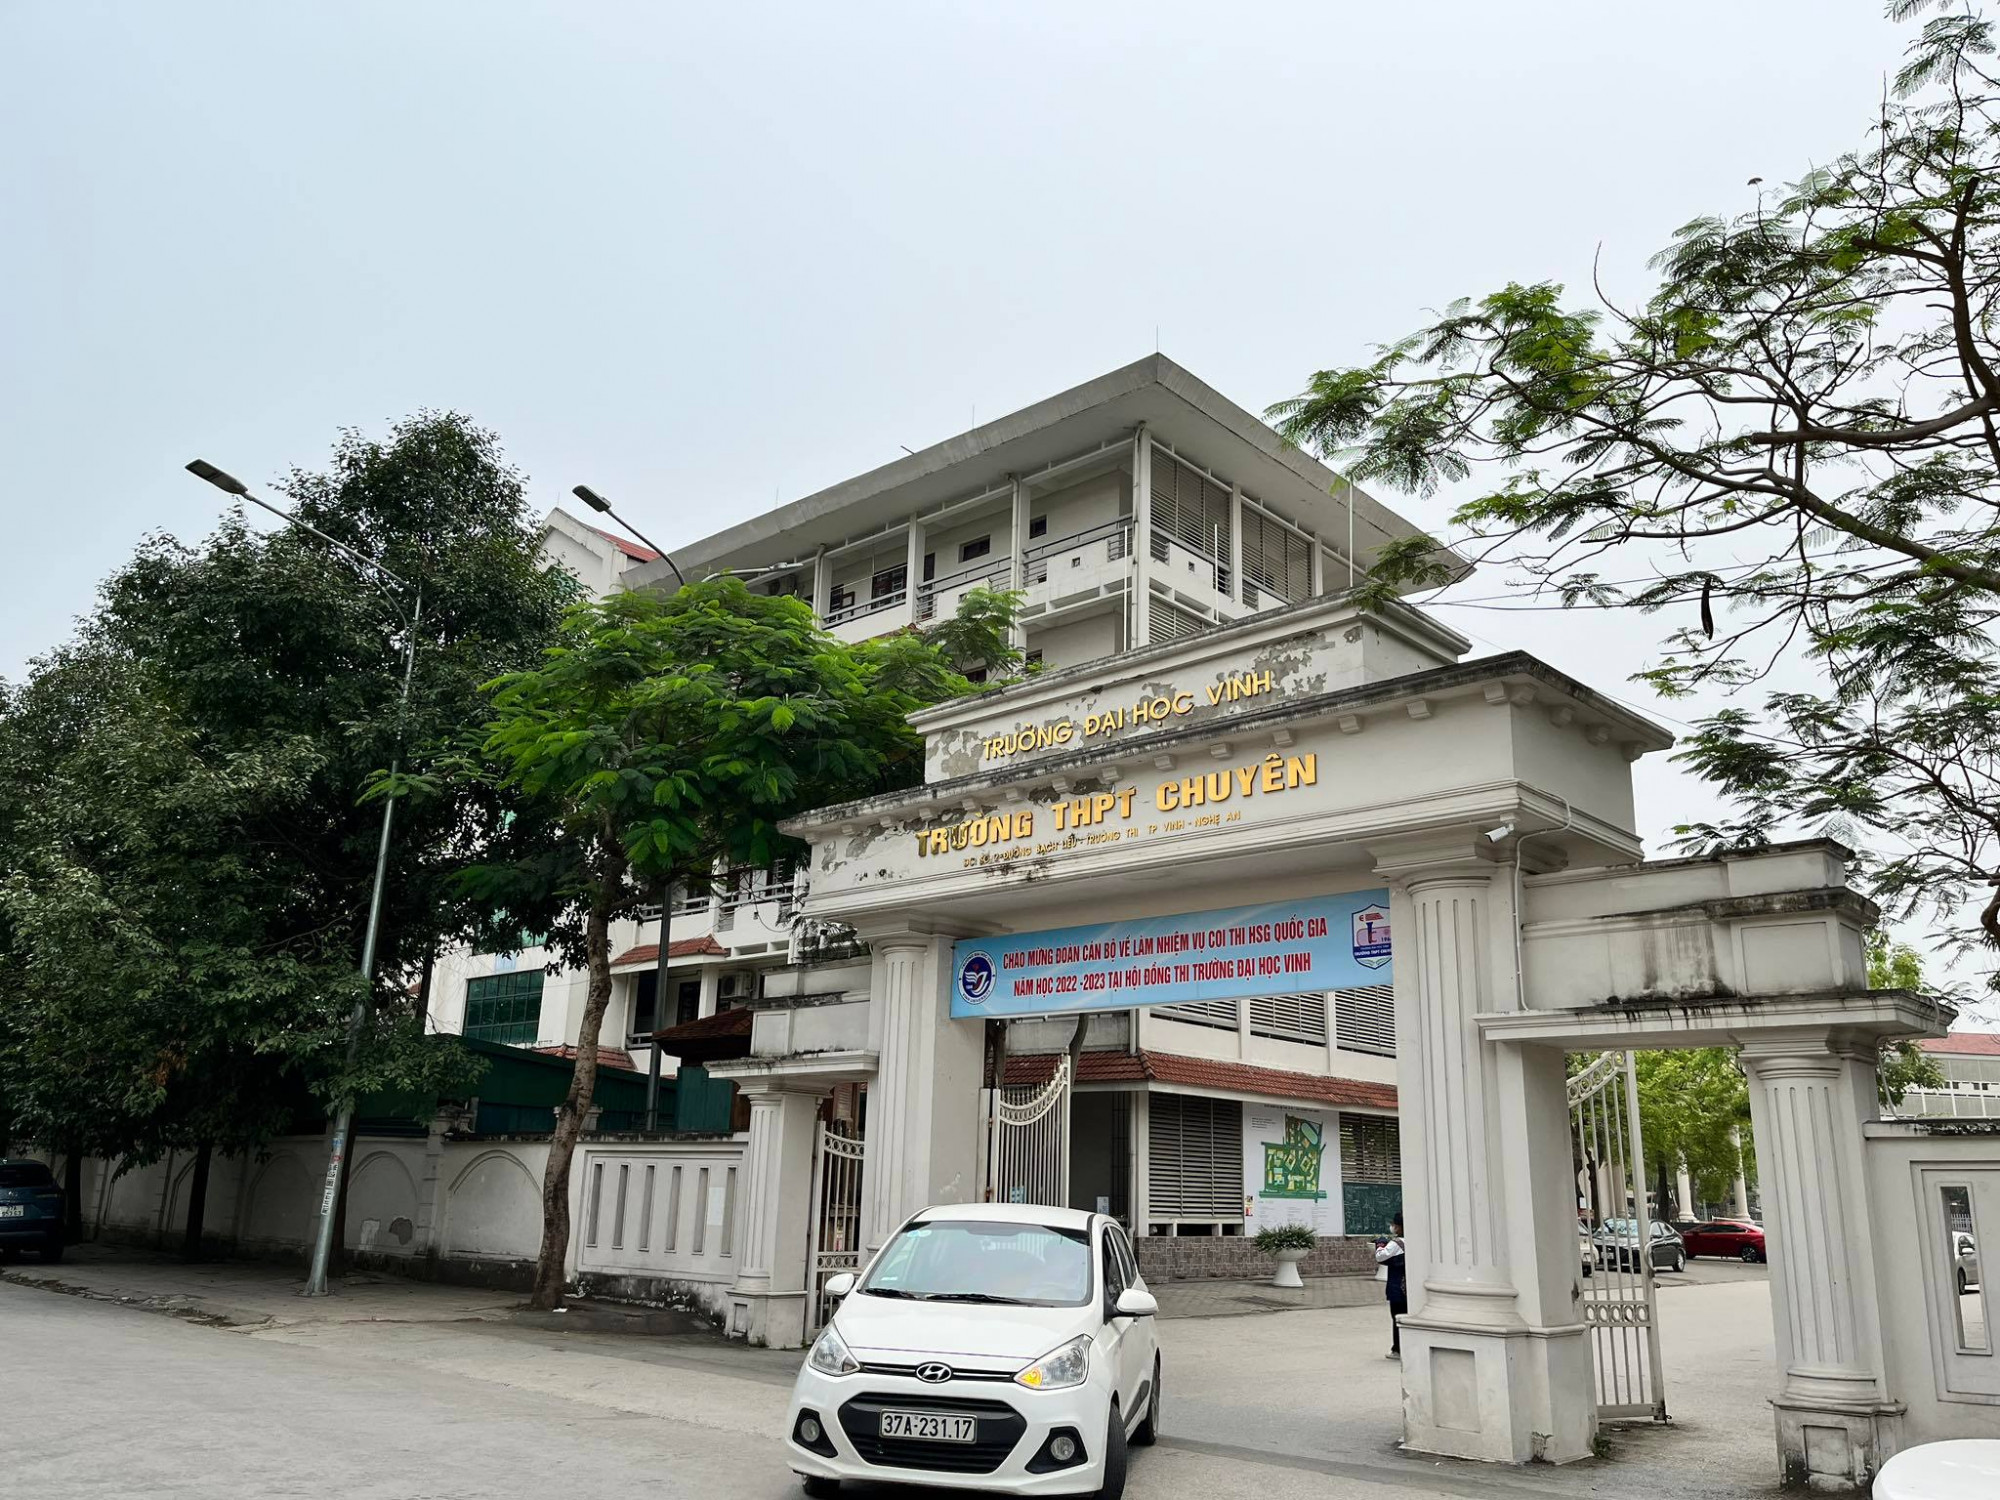 Trường THPT chuyên Đại học Vinh, nơi xảy ra sự việc - Ảnh: Phan Ngọc